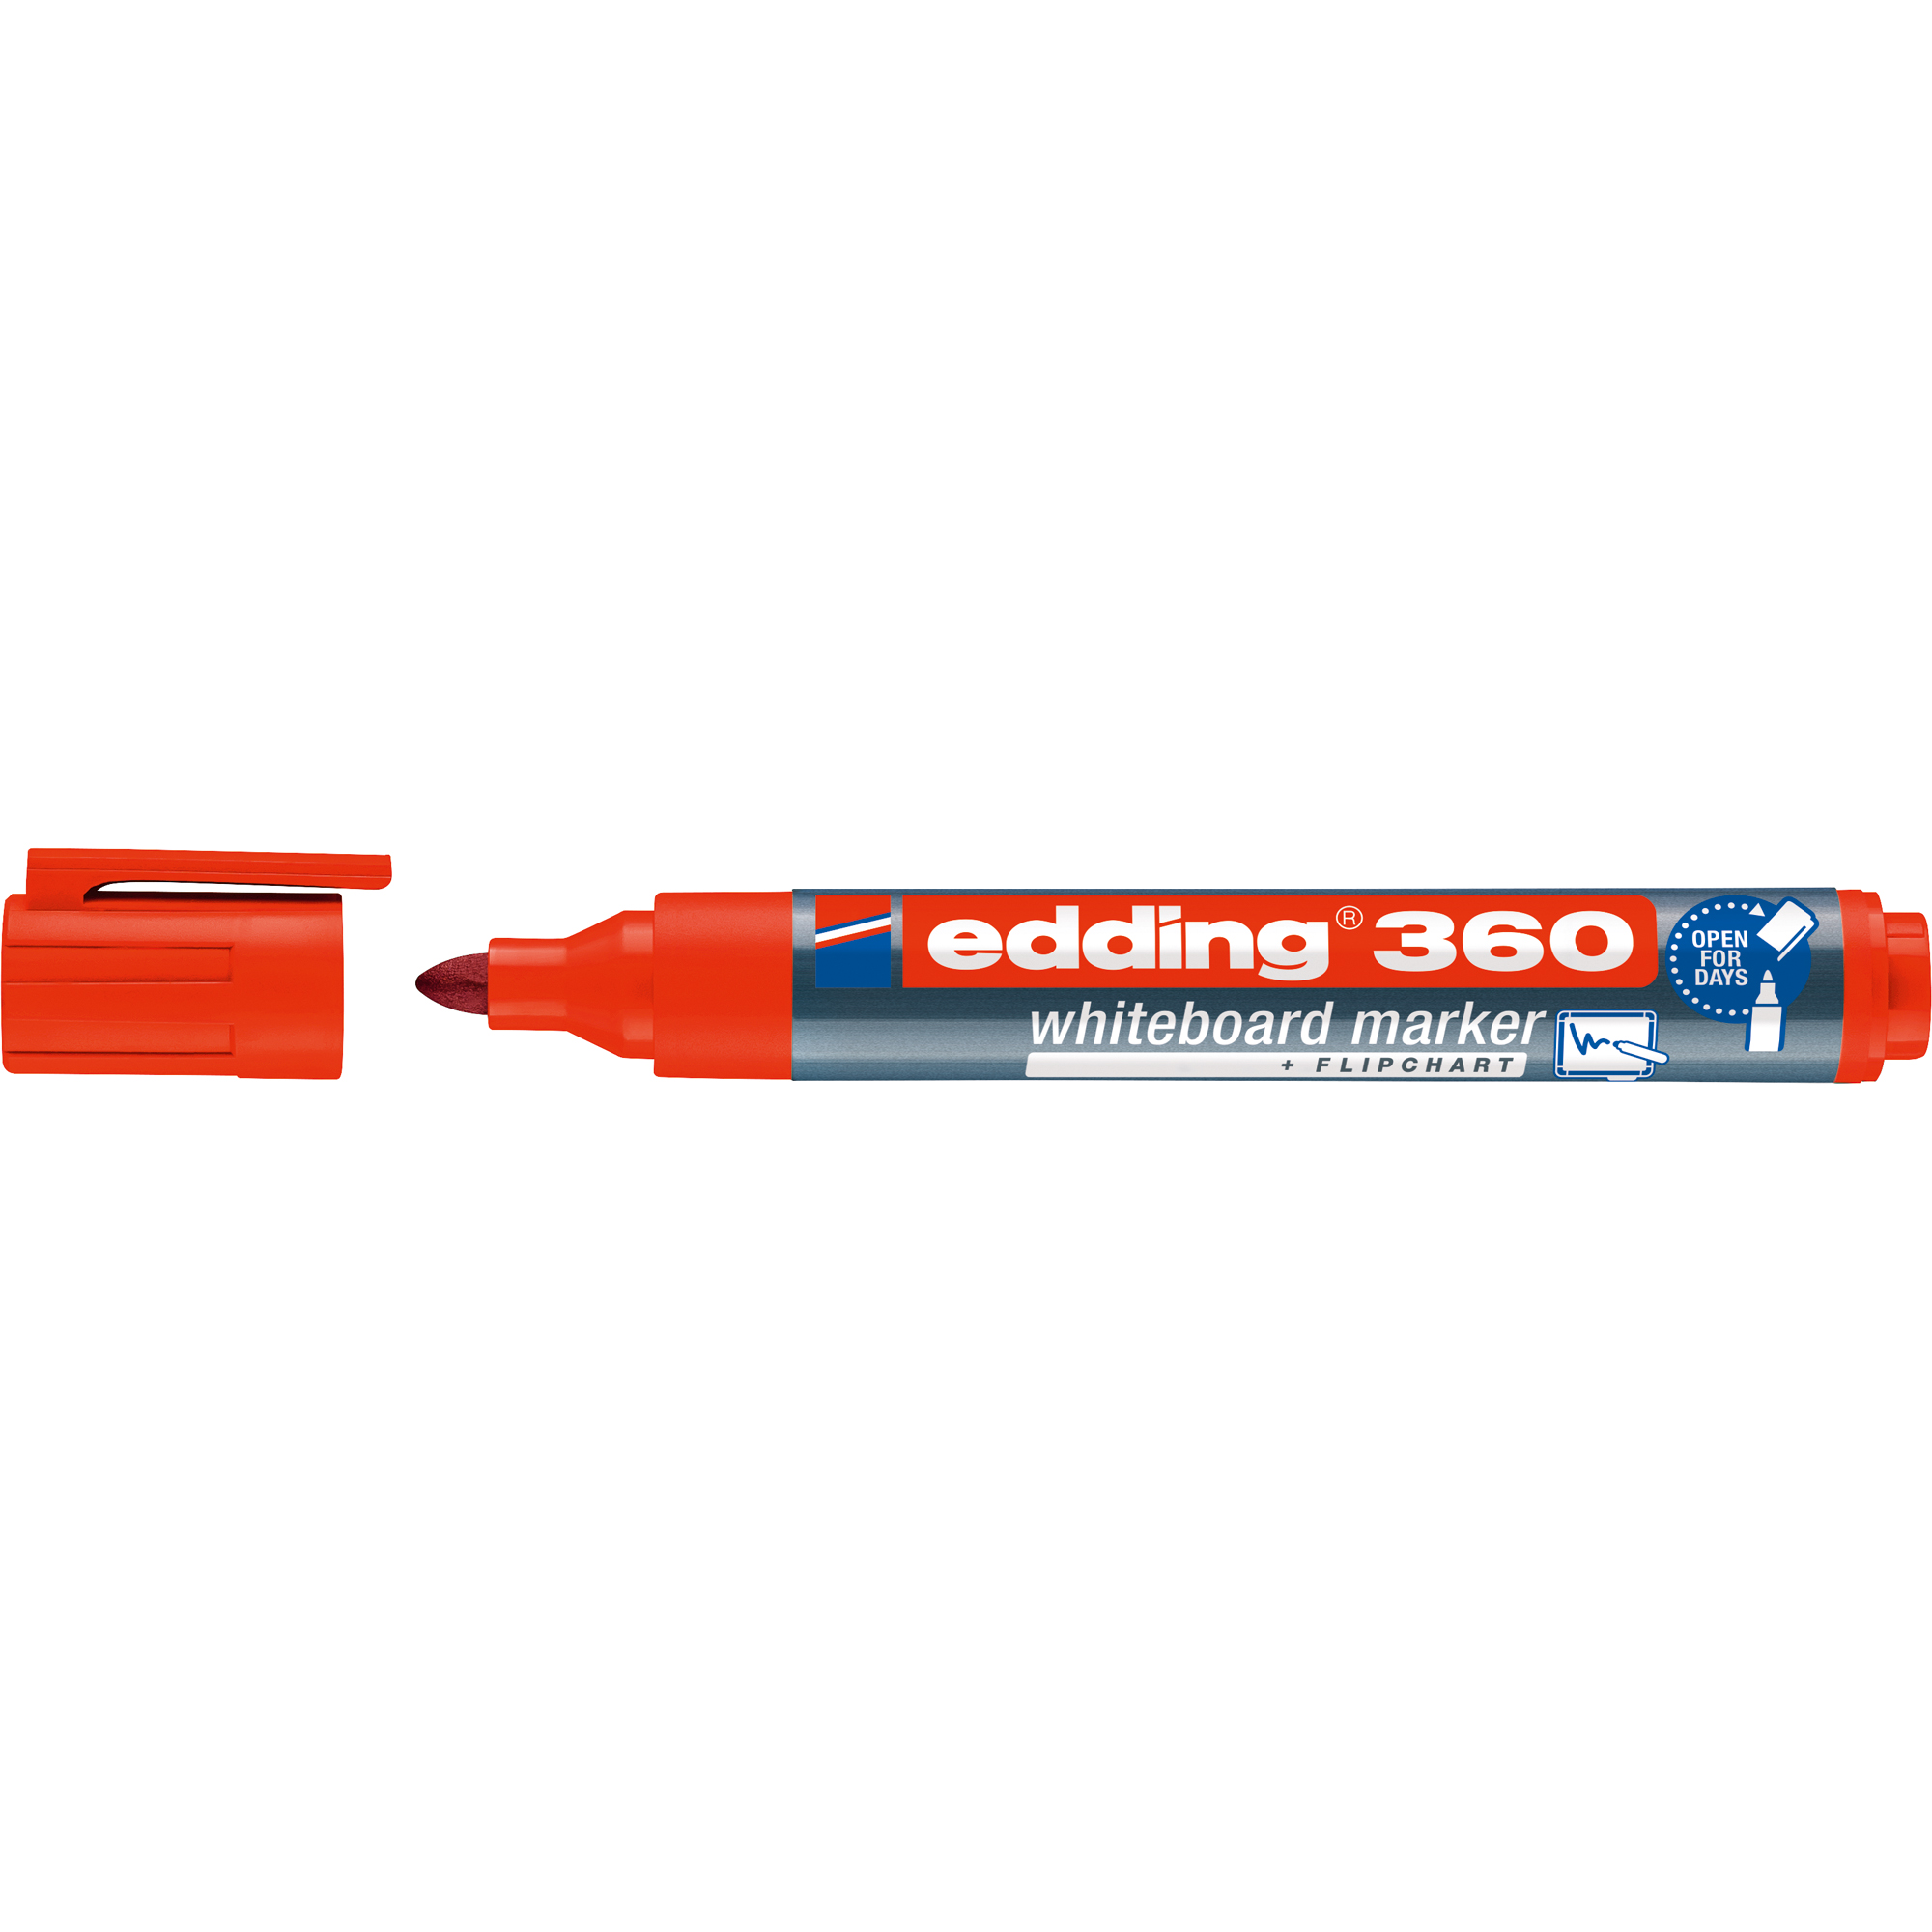 edding Whiteboardmarker 360 rot